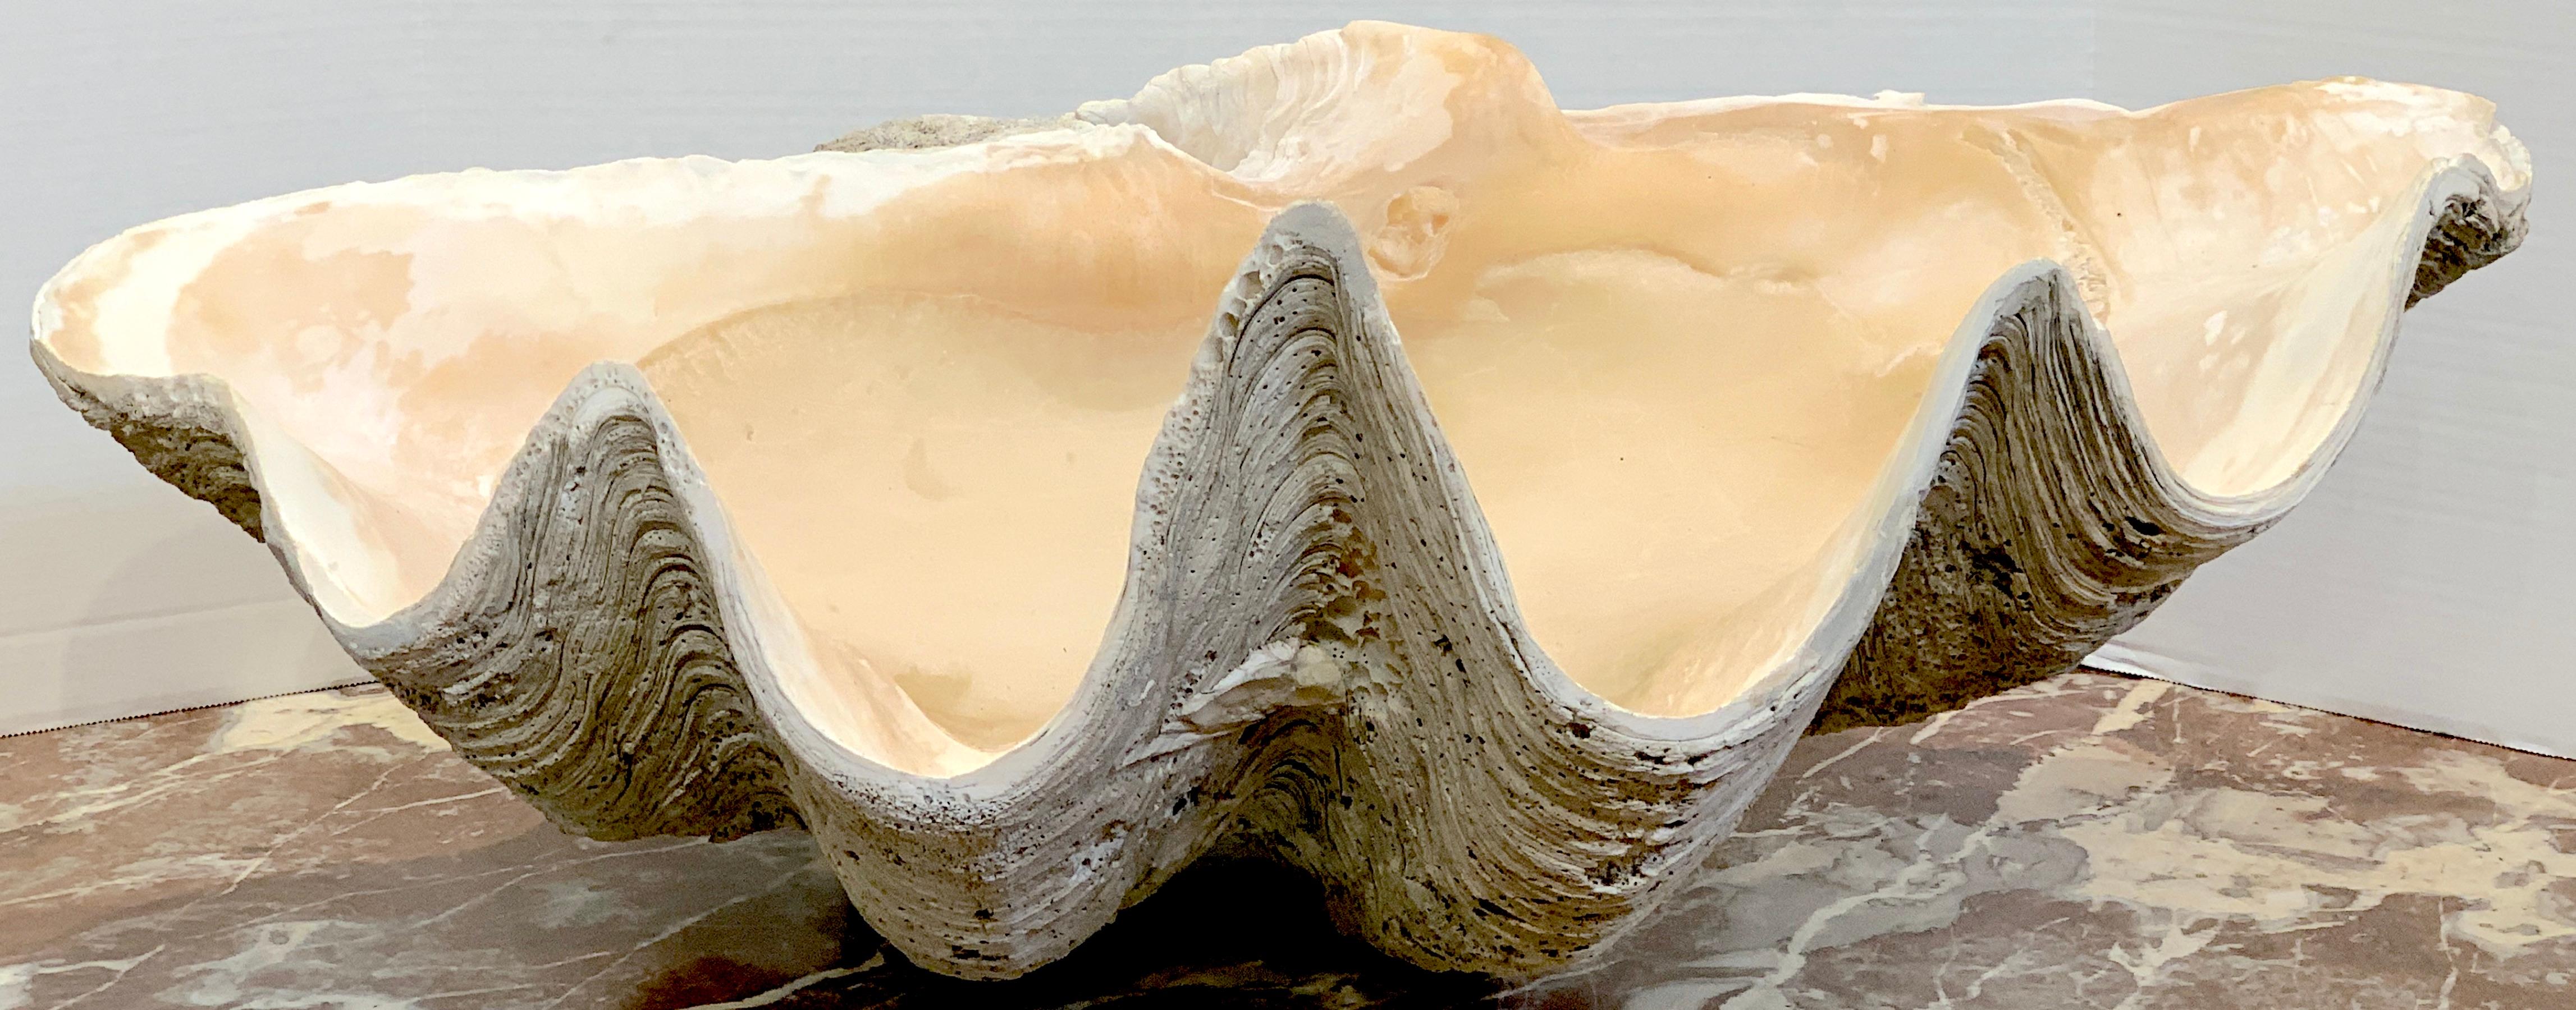 Spécimen de palourde géante 'Tridacna Gigas'
Un bel exemple avec une patine et une surface exquises.